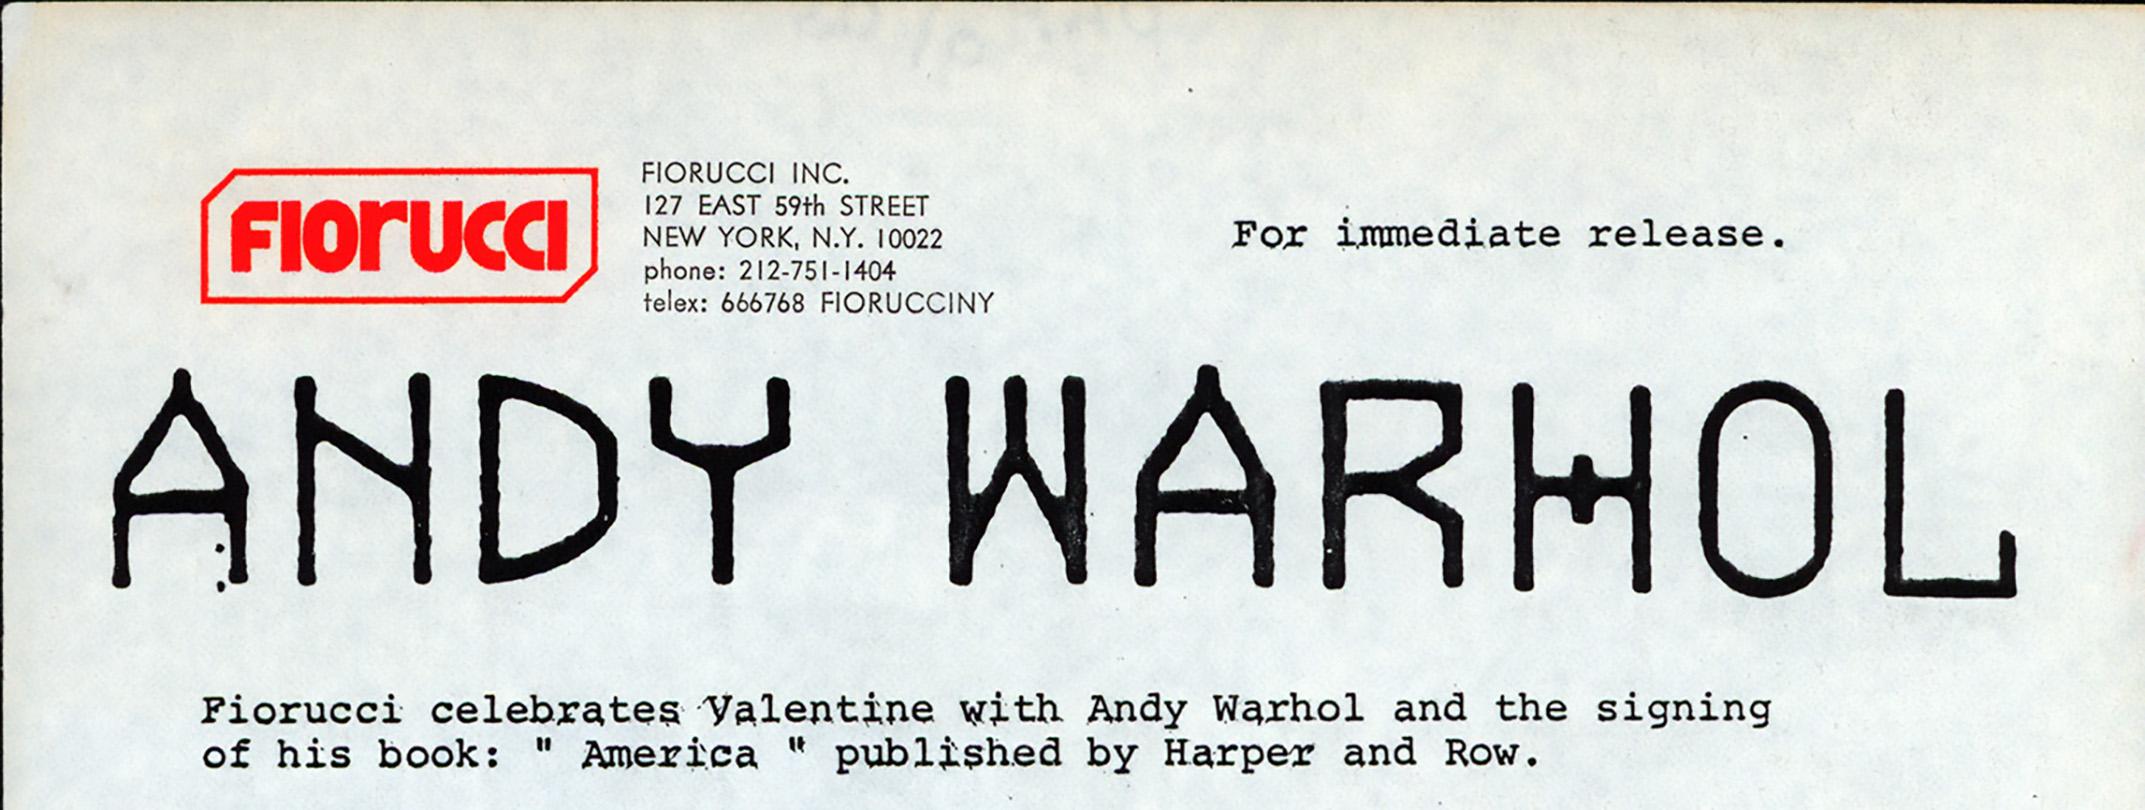 Andy Warhol "America" Fiorucci Presseerklärung 1986:
Original-Pressemitteilung für eine Andy-Warhol-Buchsignierung zum Valentinstag 1986 in der legendären New Yorker Kultureinrichtung: Fiorucci. Eine eintägige Veranstaltung, bei der Warhol sein